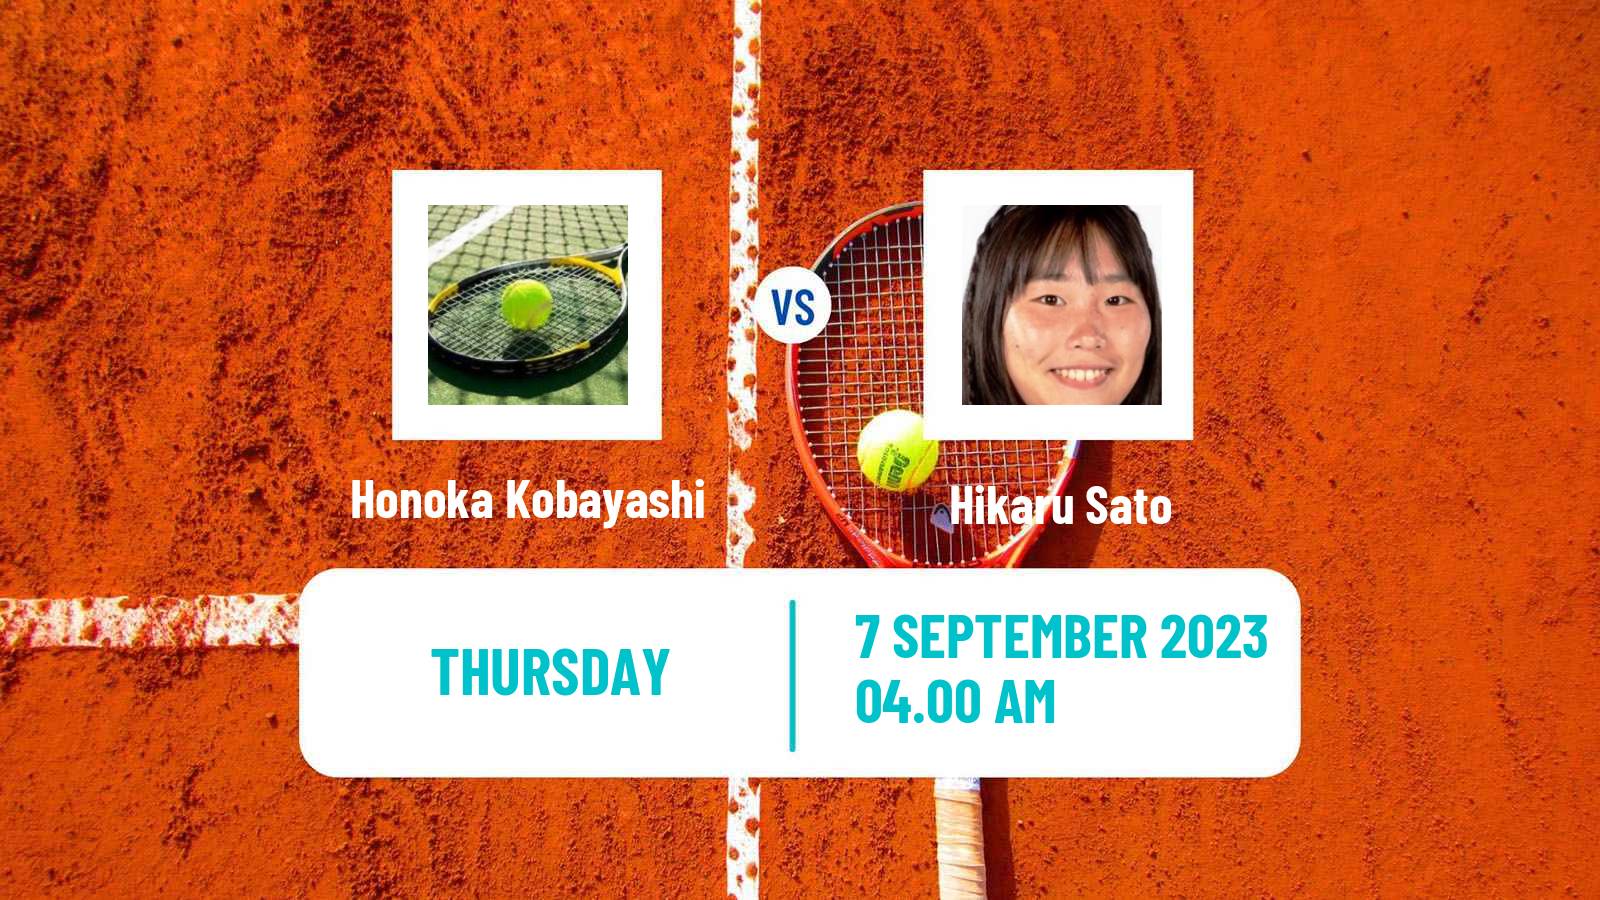 Tennis ITF W15 Yeongwol 2 Women Honoka Kobayashi - Hikaru Sato